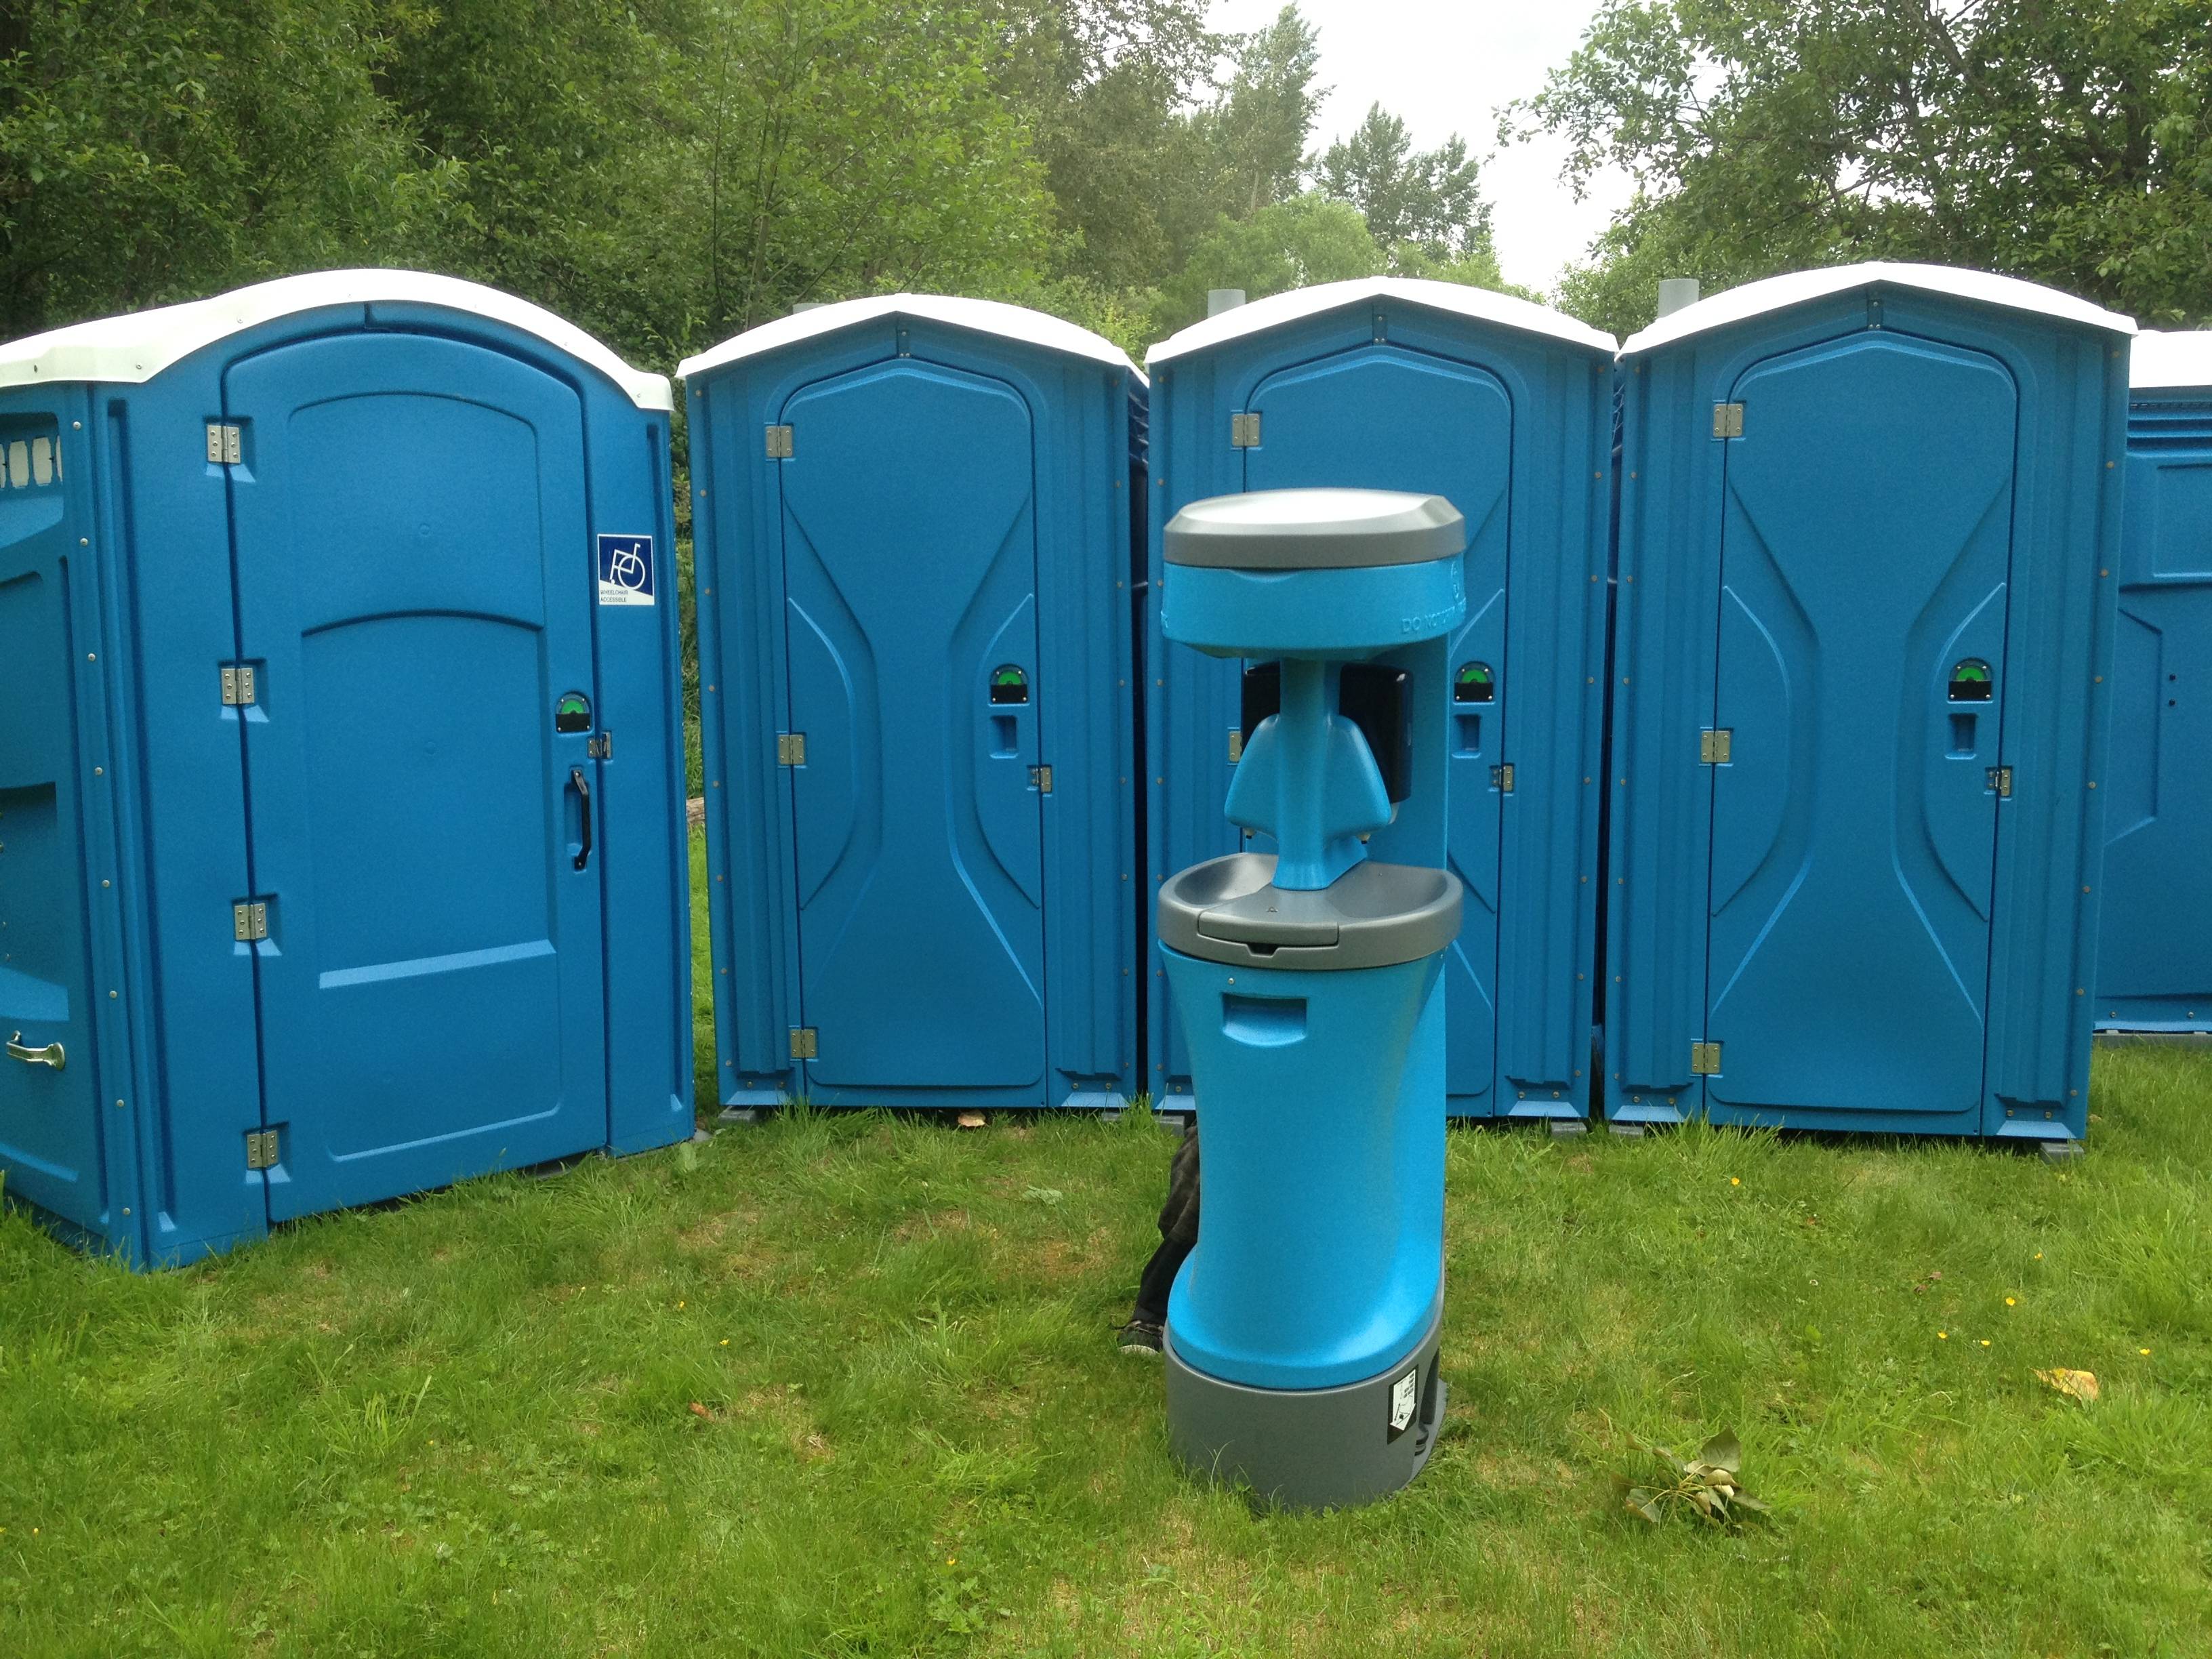 Как выбрать биотуалет для дачи: какой выбрать, какие бывают виды, стационарный туалет, что значит биотуалет, выбор высоты, типы, характеристика